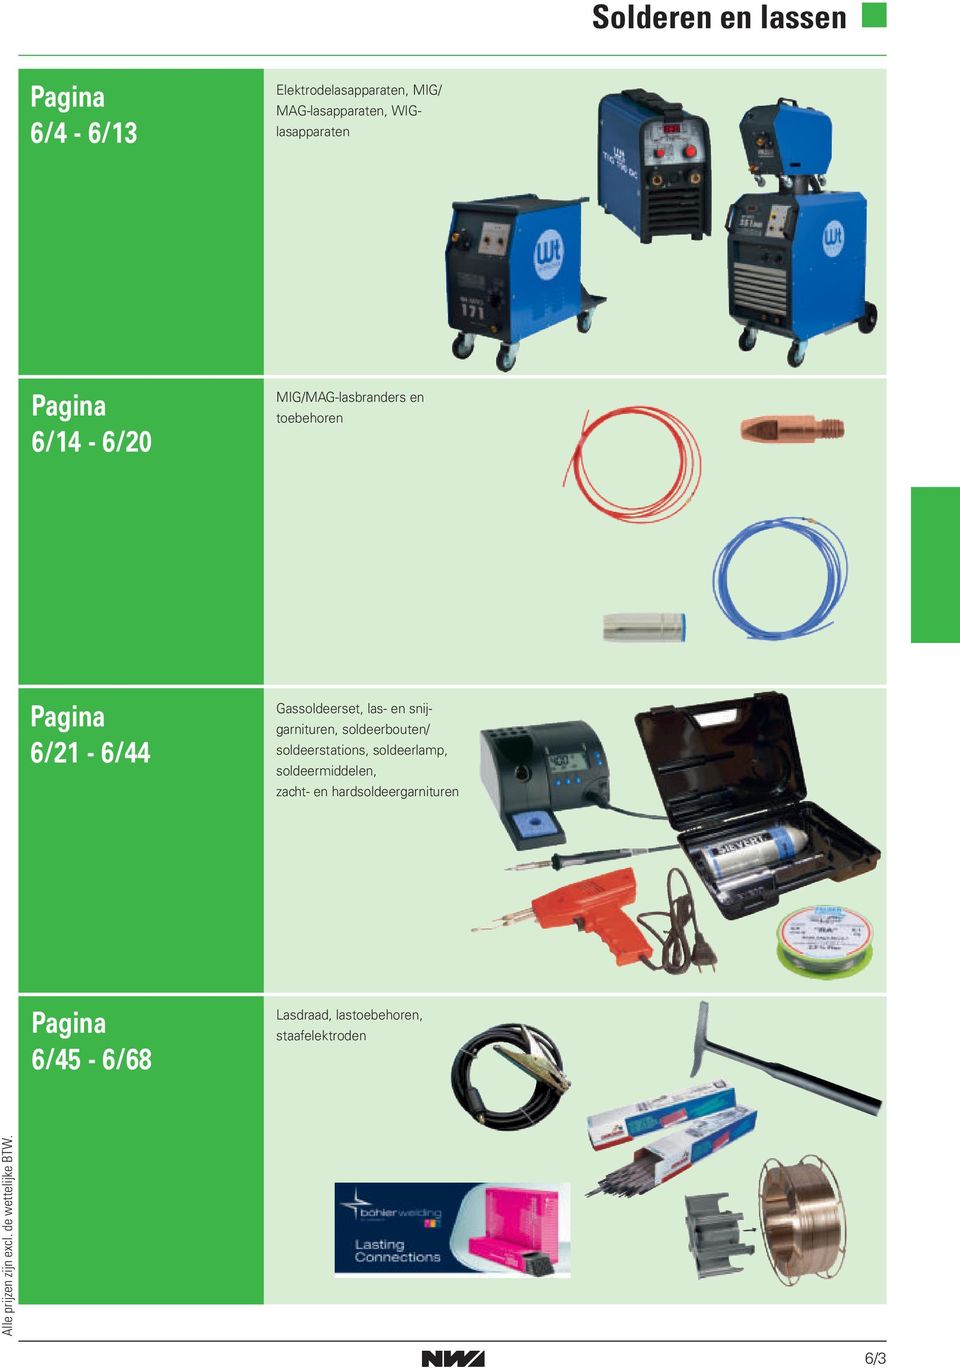 soldeerbouten/ soldeerstations, soldeerlamp, soldeermiddelen, zacht- en hardsoldeergarnituren